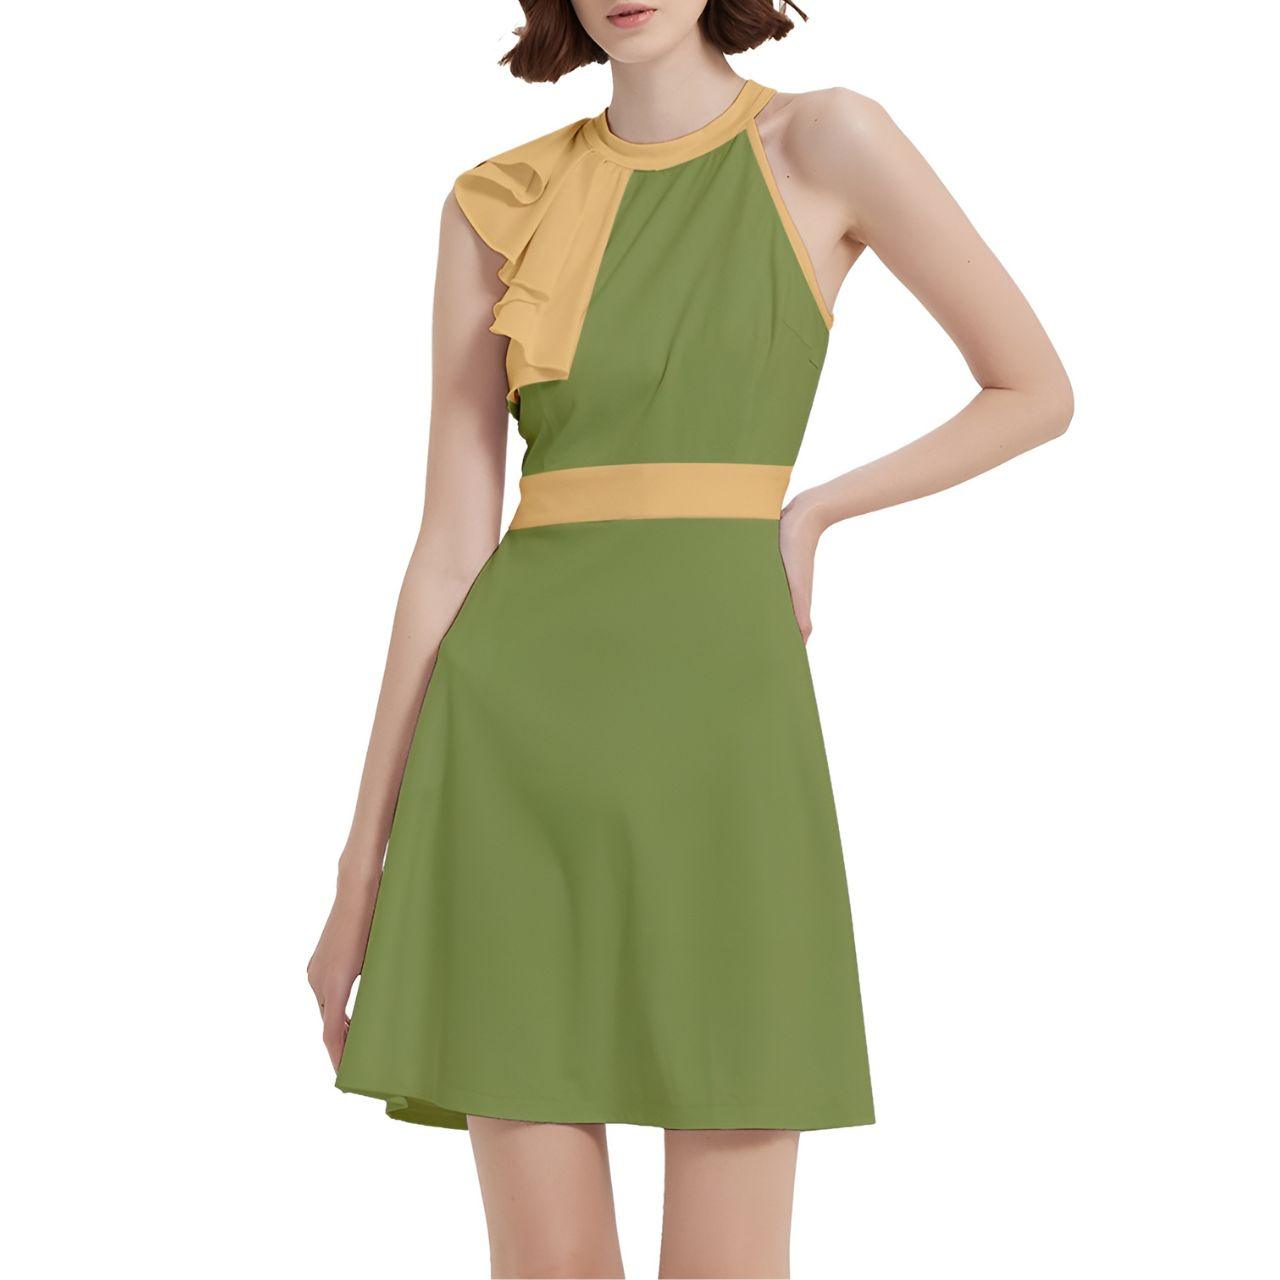 Ebisa Green & Yellow Cocktail Halter Sleeveless Dress - Blissfully Brand